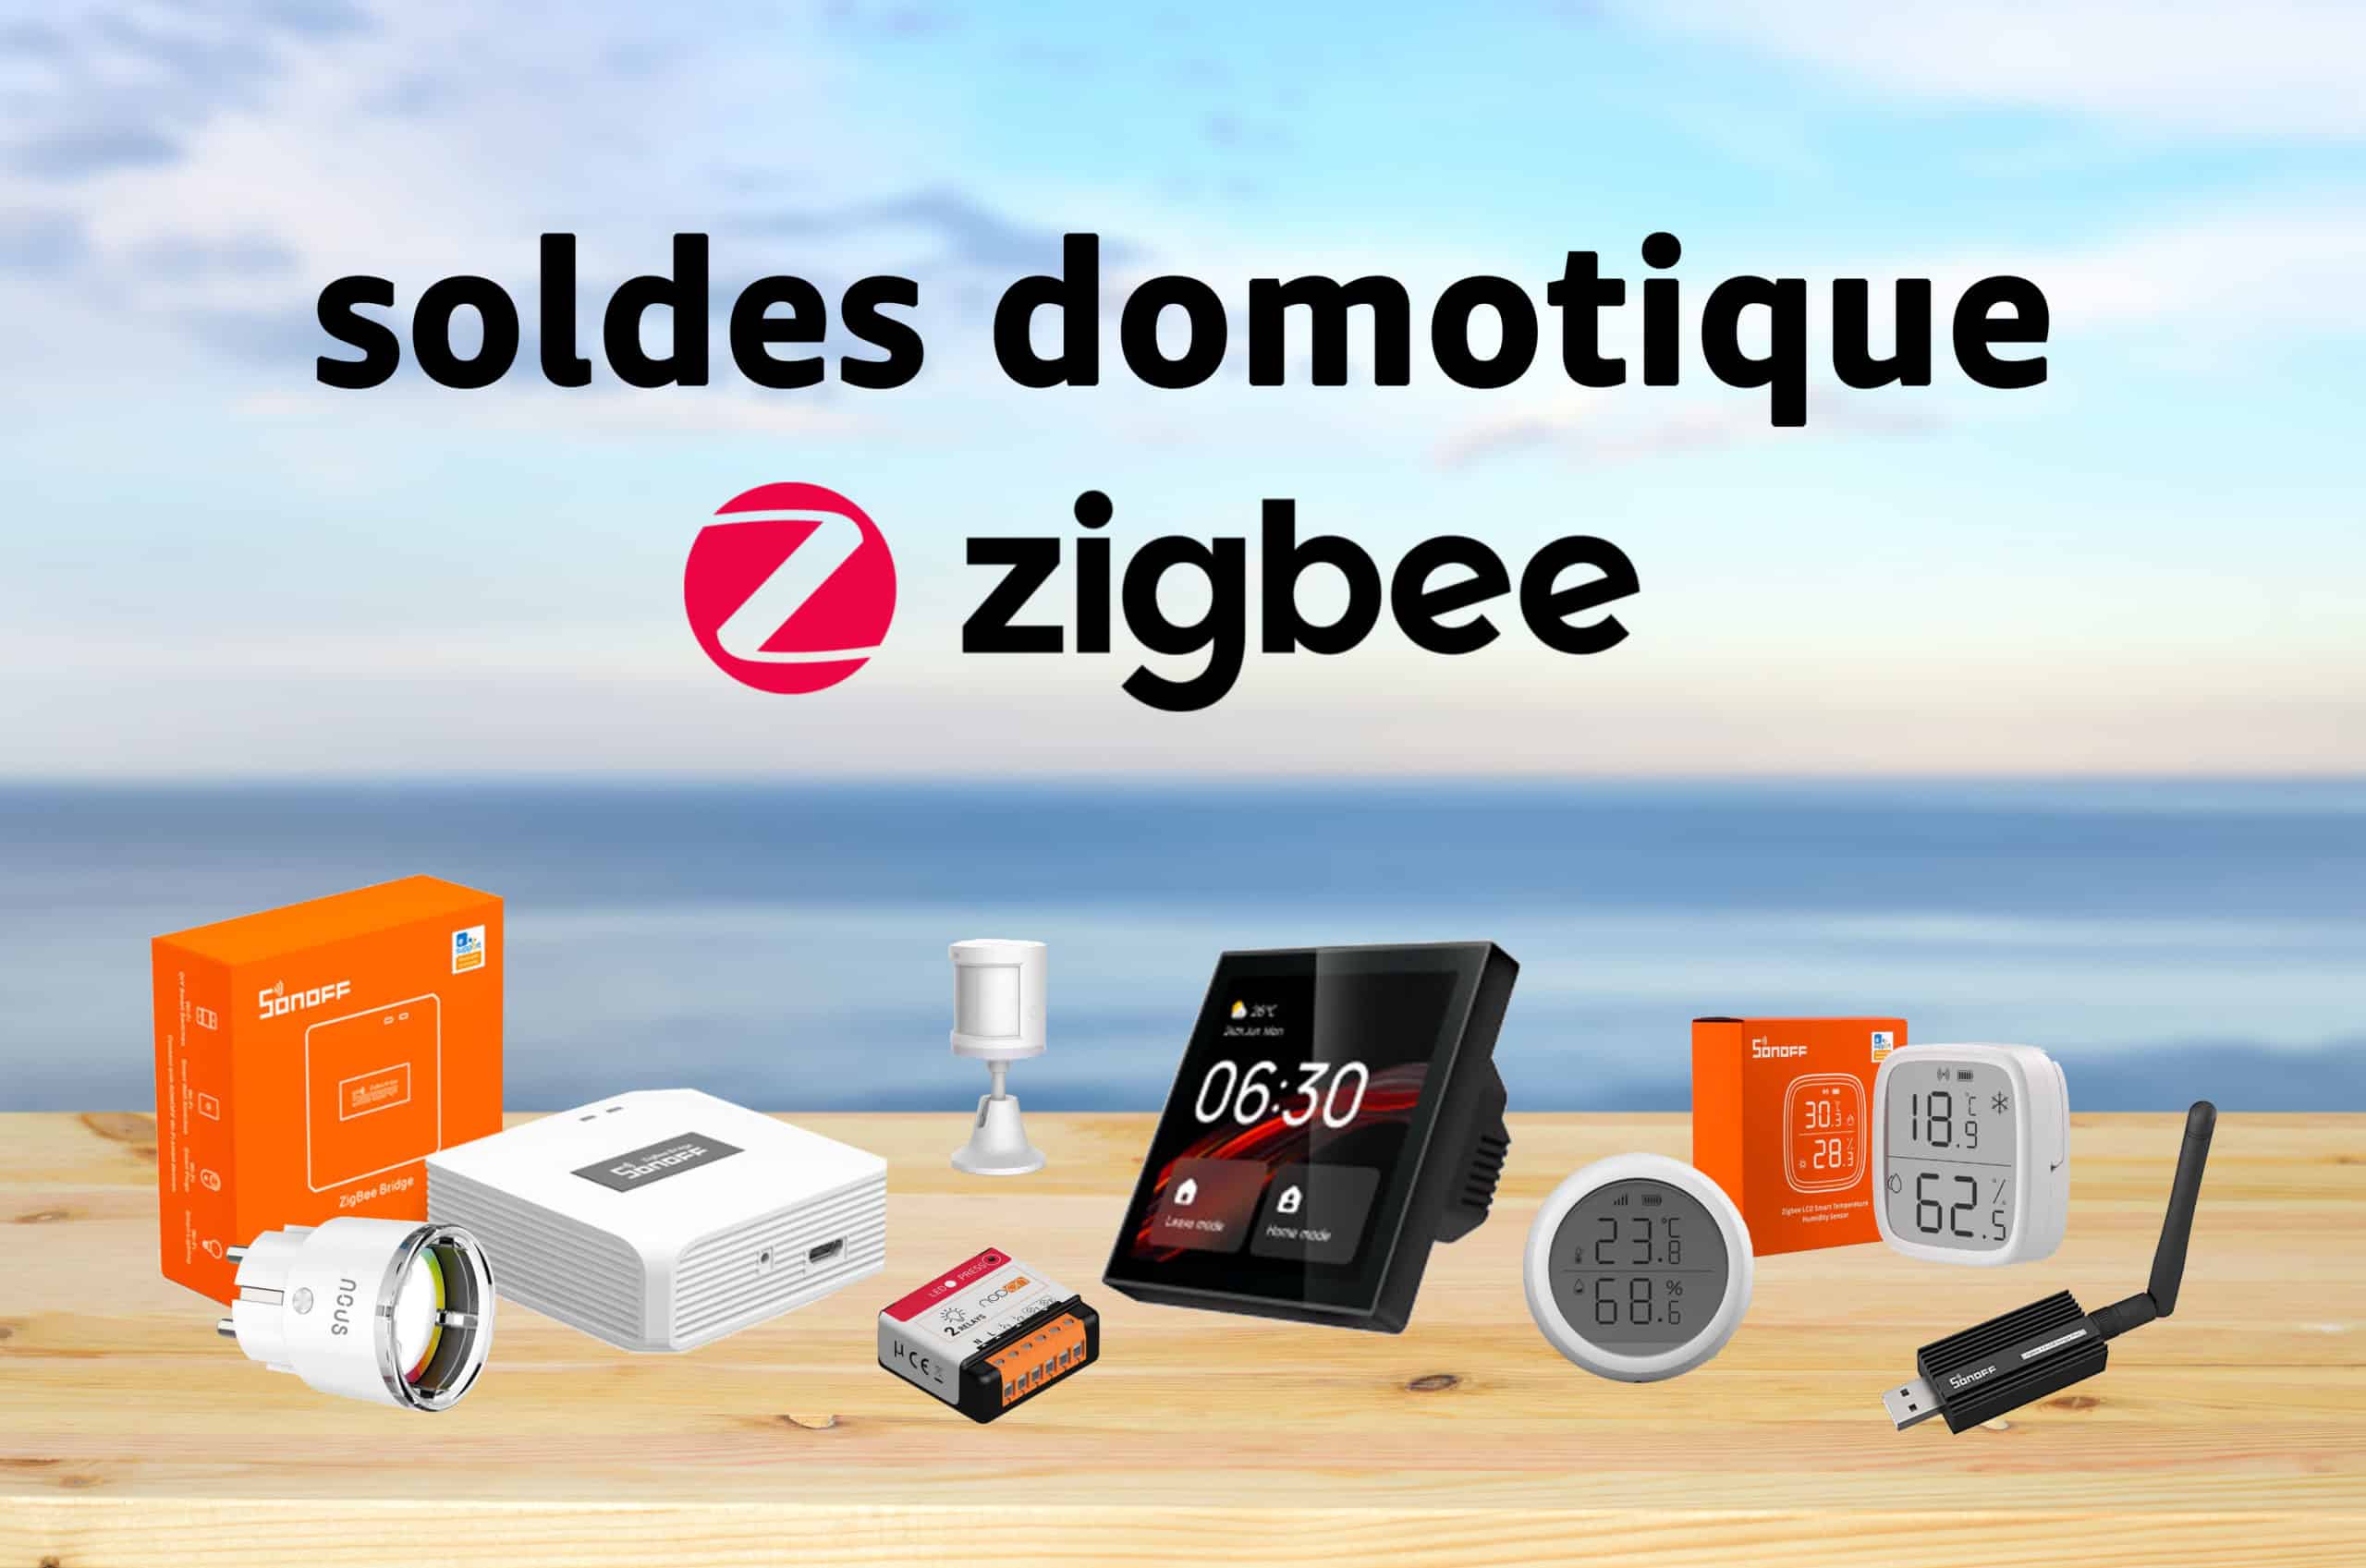 Sunricher, toute une gamme de produits Zigbee compatibles Philips